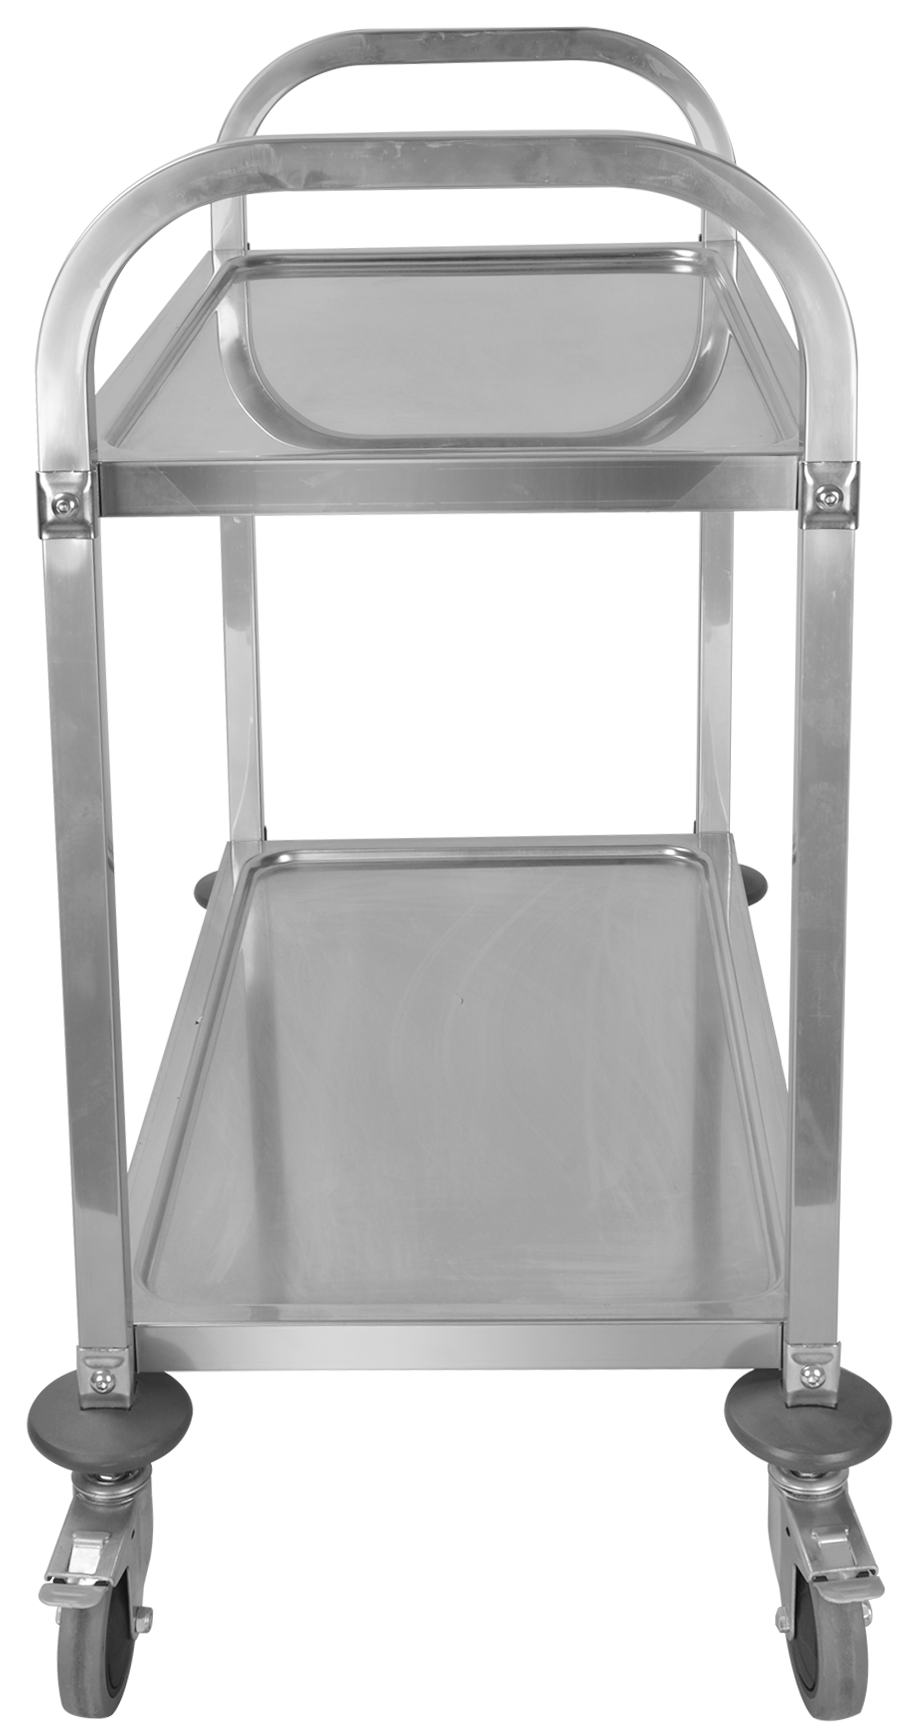 Dwuwarstwowy wózek restauracyjny ze stali nierdzewnej (kwadratowa rura)